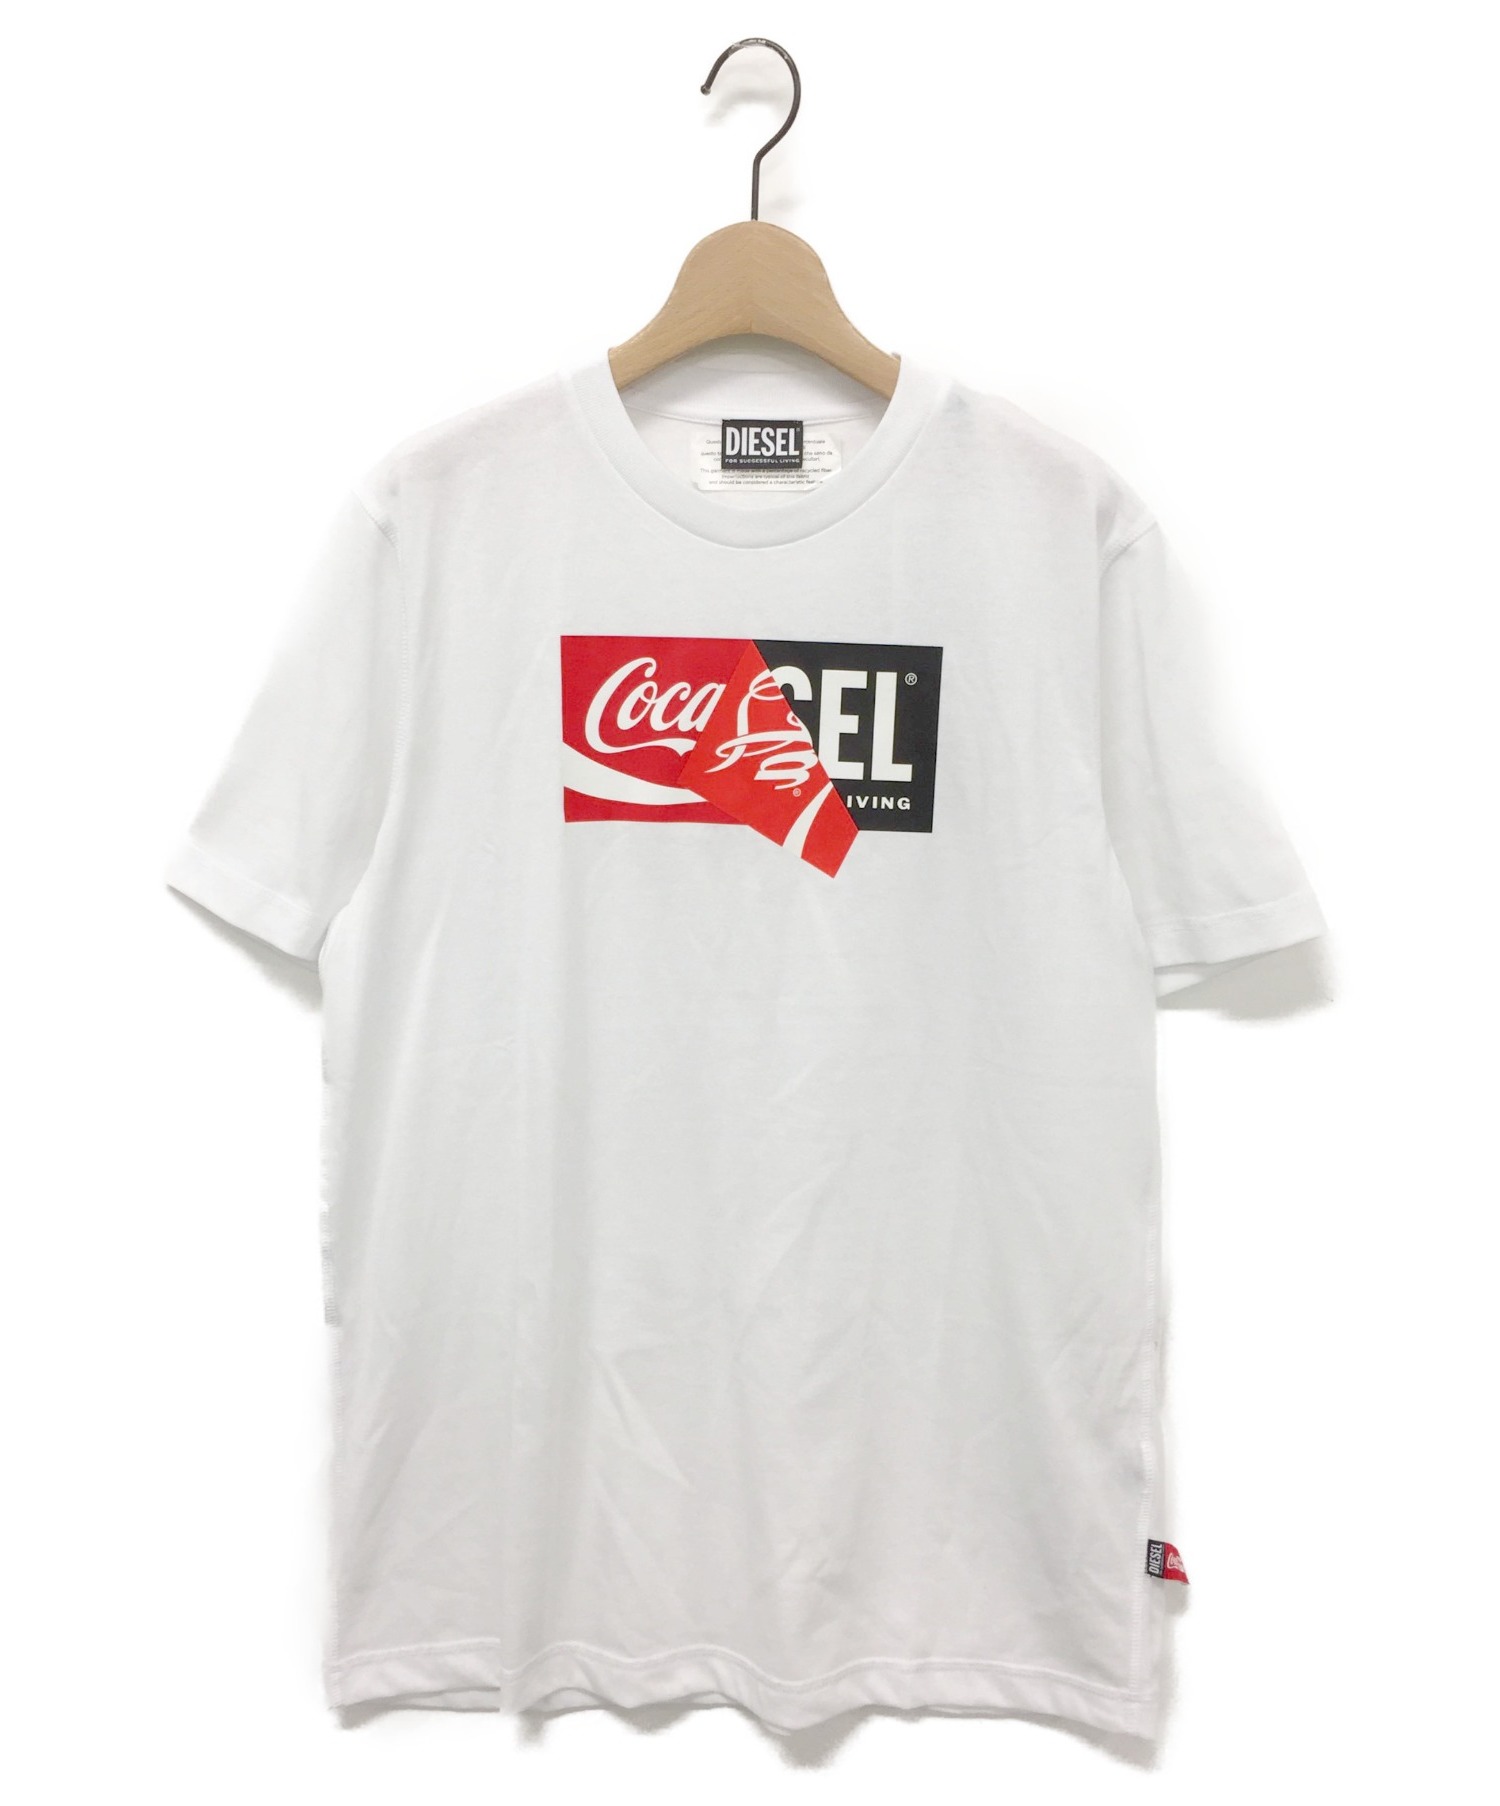 DIESEL Tシャツ Coca-Cola コカコーラ コラボ ホワイト XL